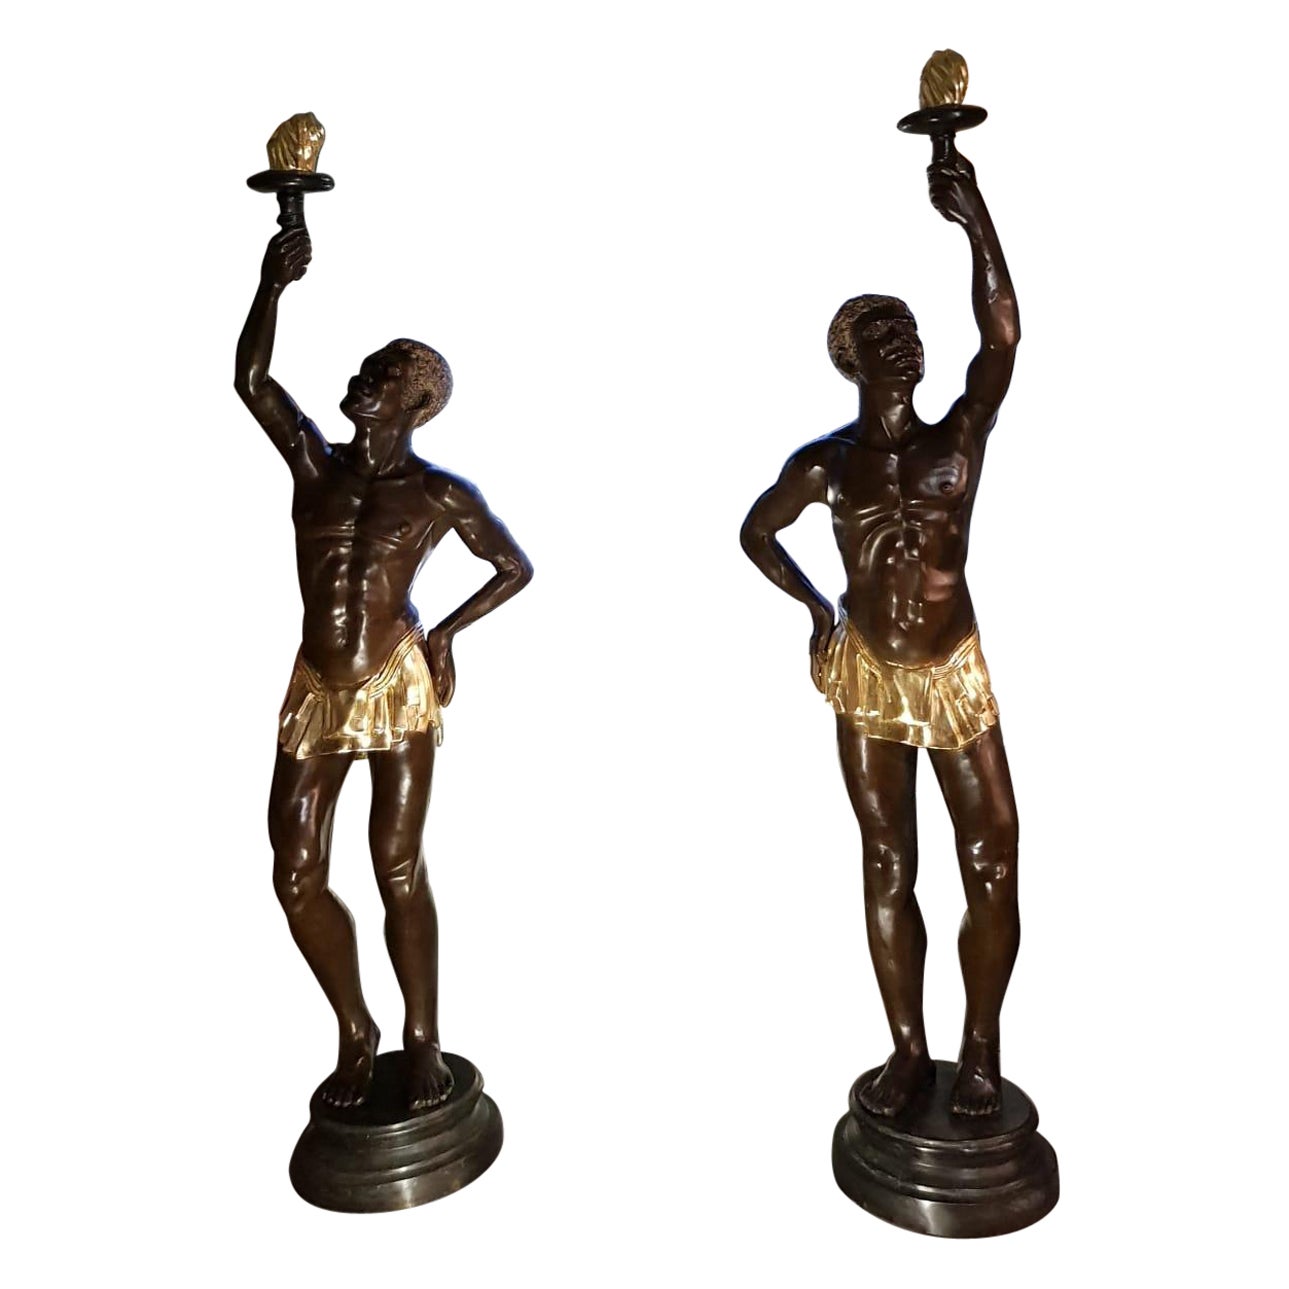 Paire de statuettes iconiques en bronze représentant des nus emportant des torches